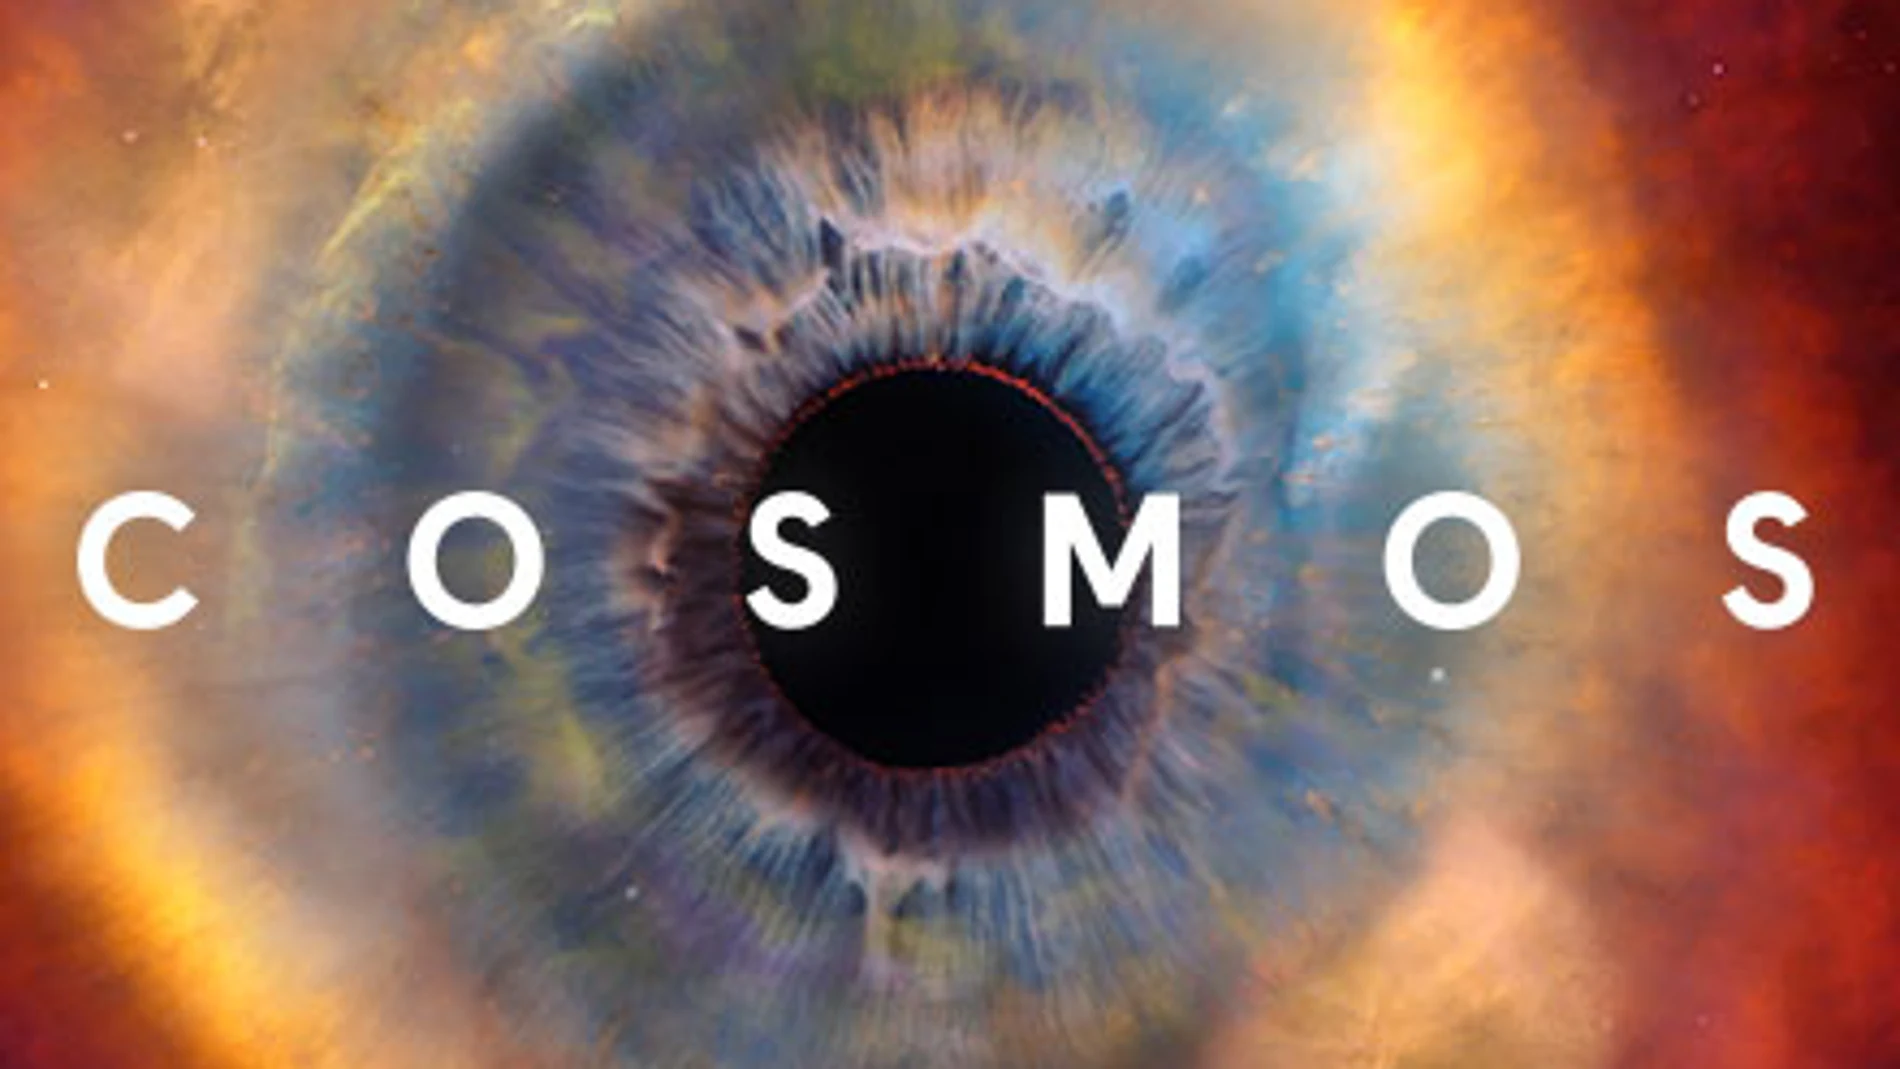 El documental 'Cosmos' cuenta con 13 episodios